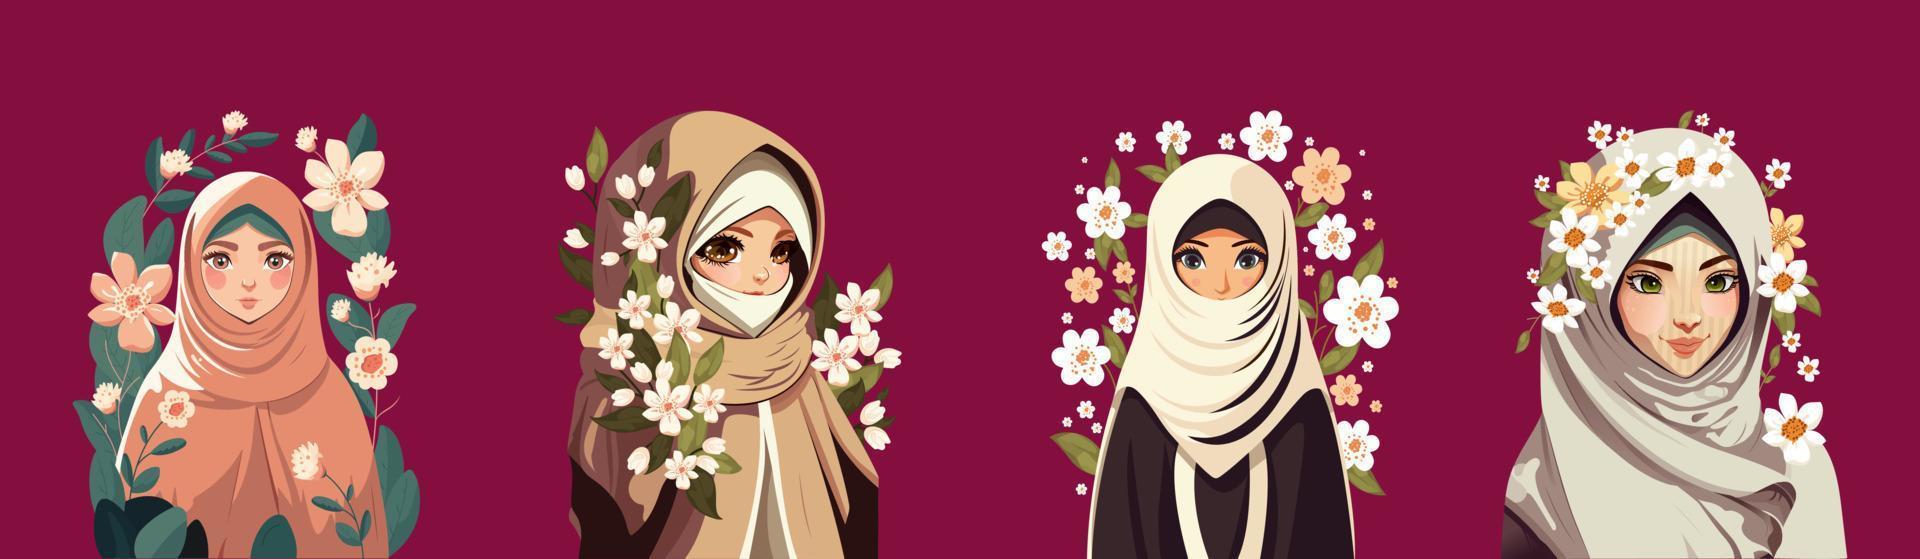 muslim ung kvinnor tecken bär hijab och dekorativ blommig på mörk rosa bakgrund. vektor